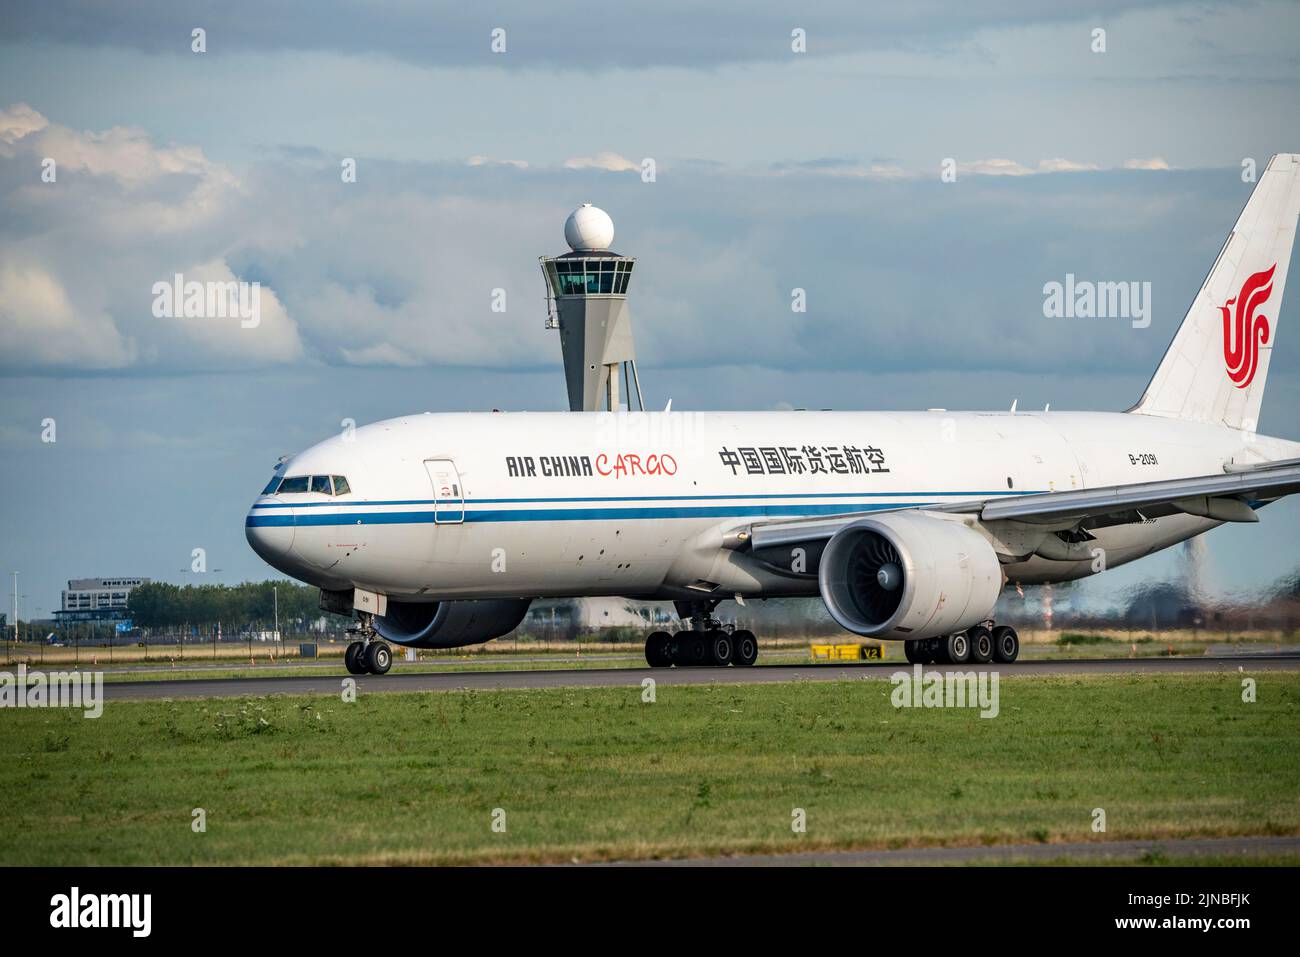 Amsterdam Shiphol Airport, Polderbaan, una de las 6 pistas, B-2091 Air China Cargo Boeing 777F, despegando, Foto de stock